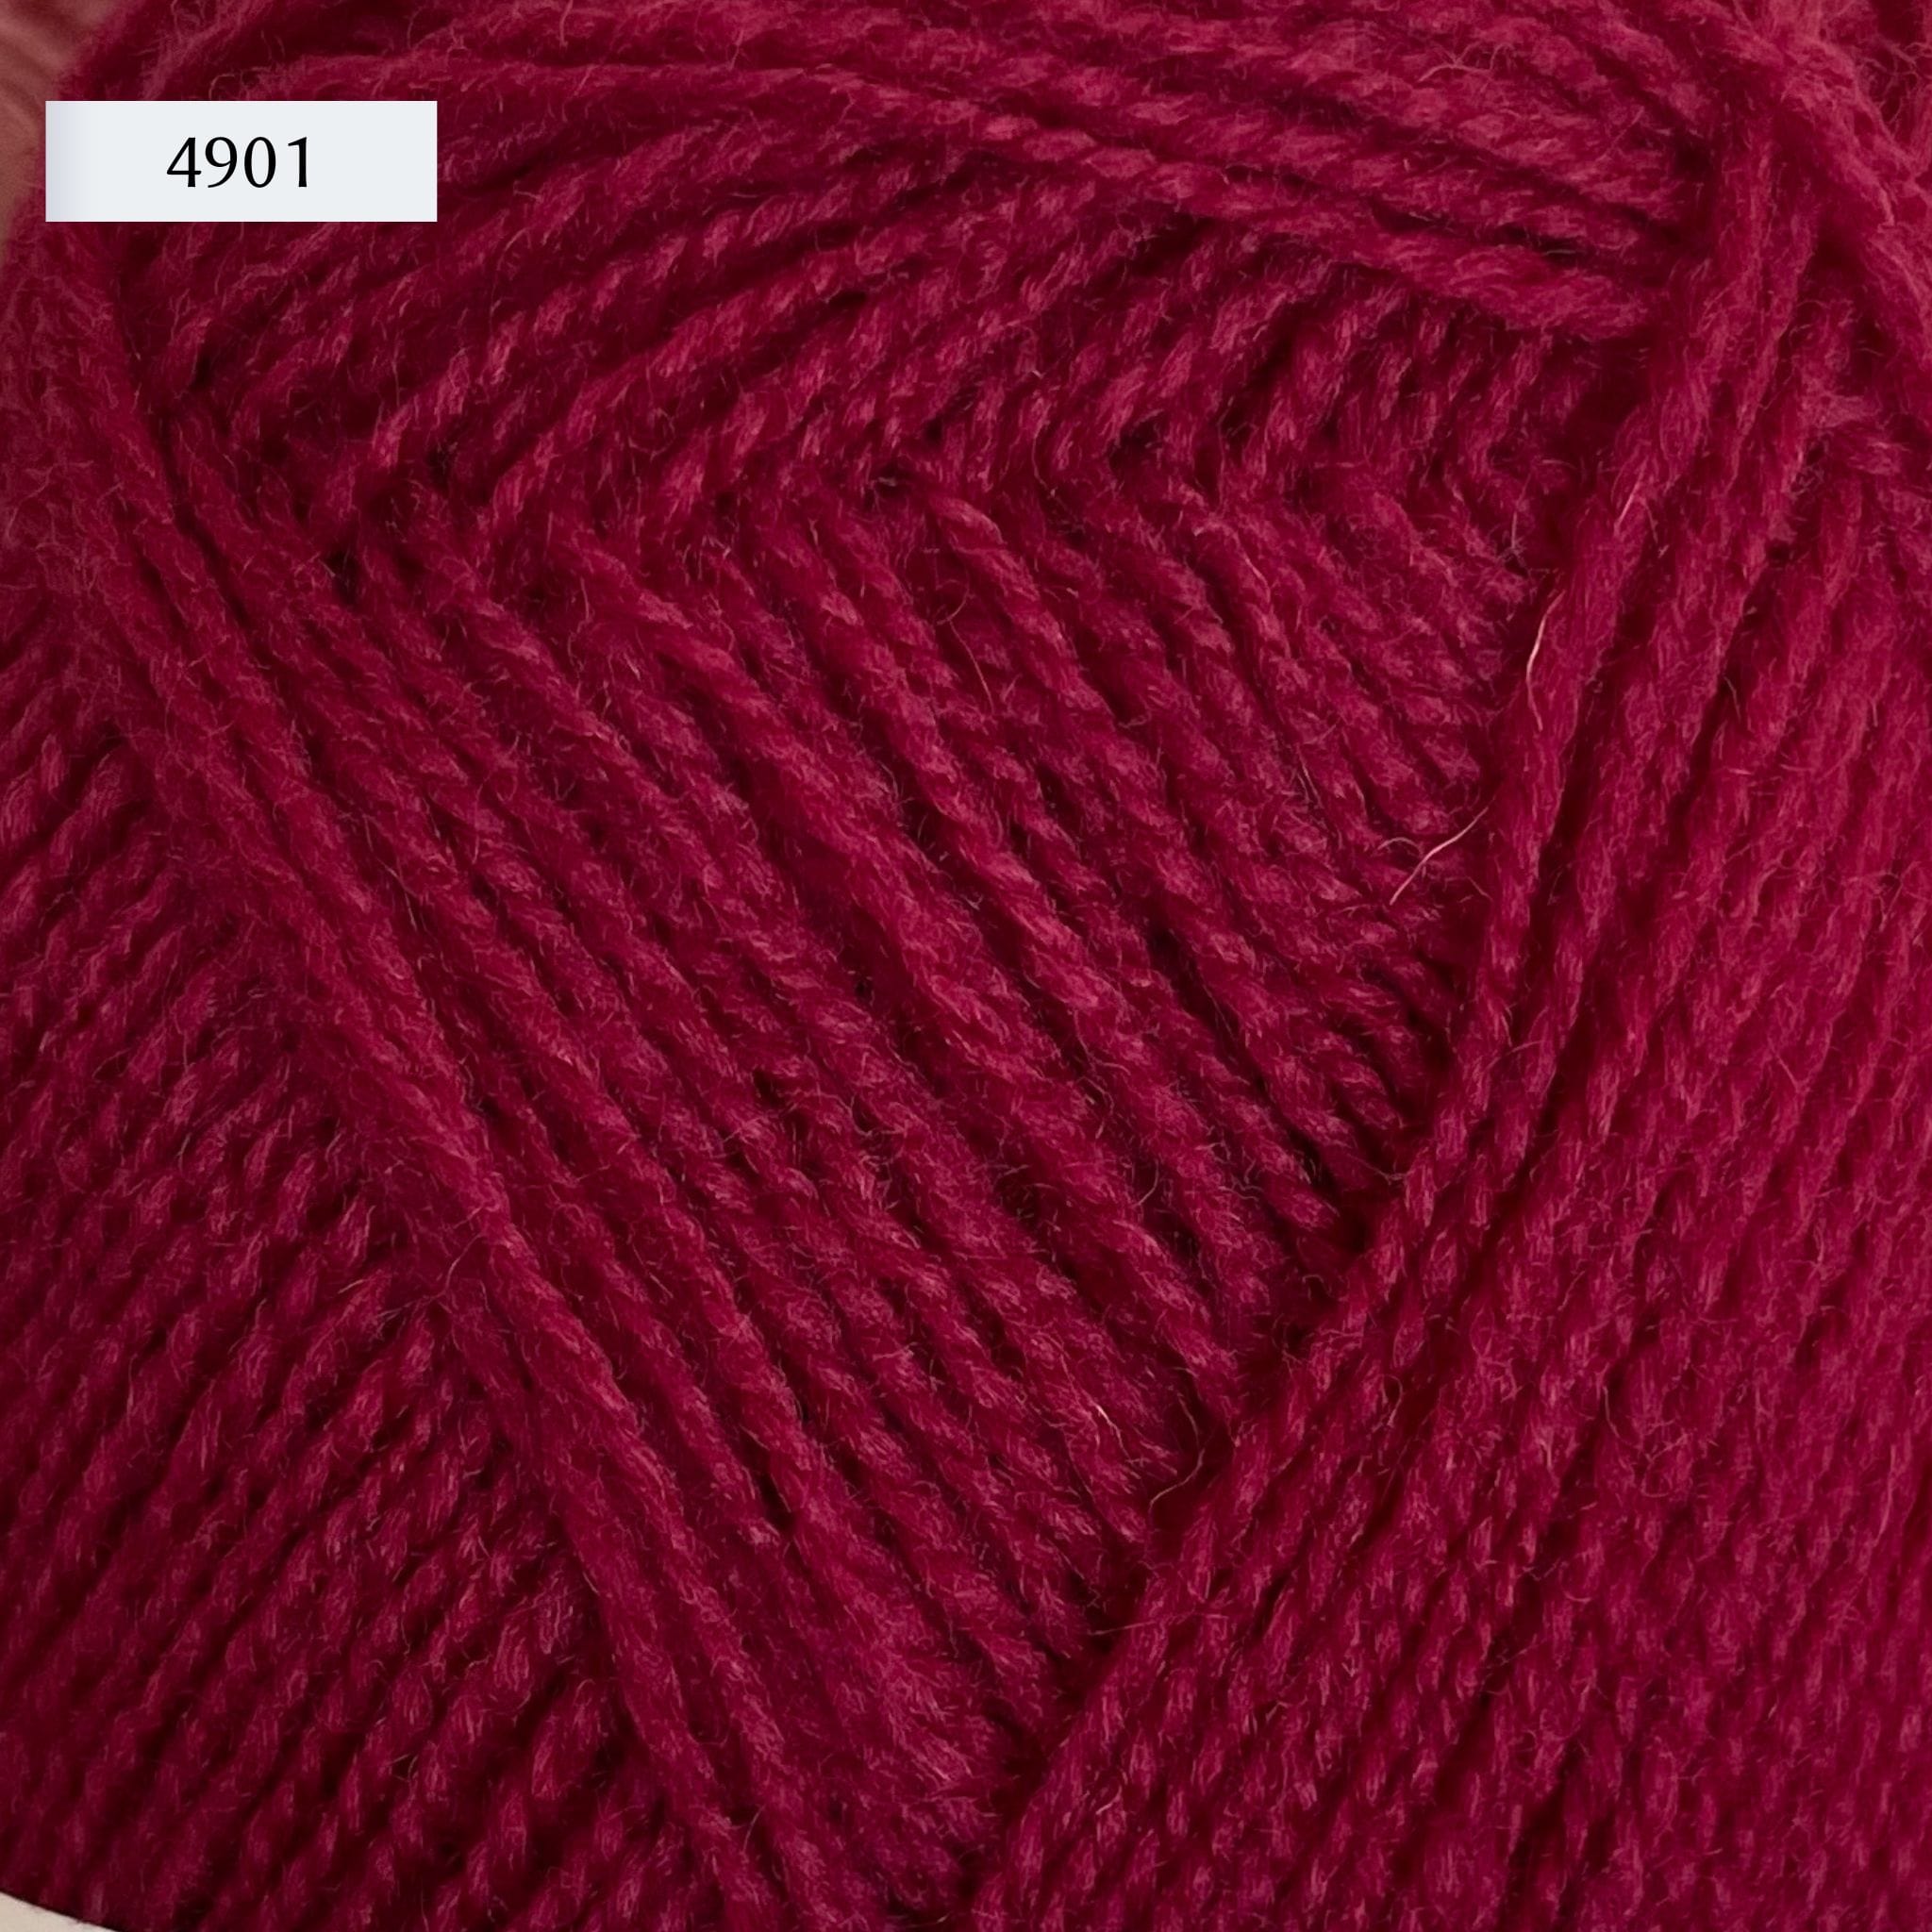 Rauma Gammelserie 2ply Wool Yarn